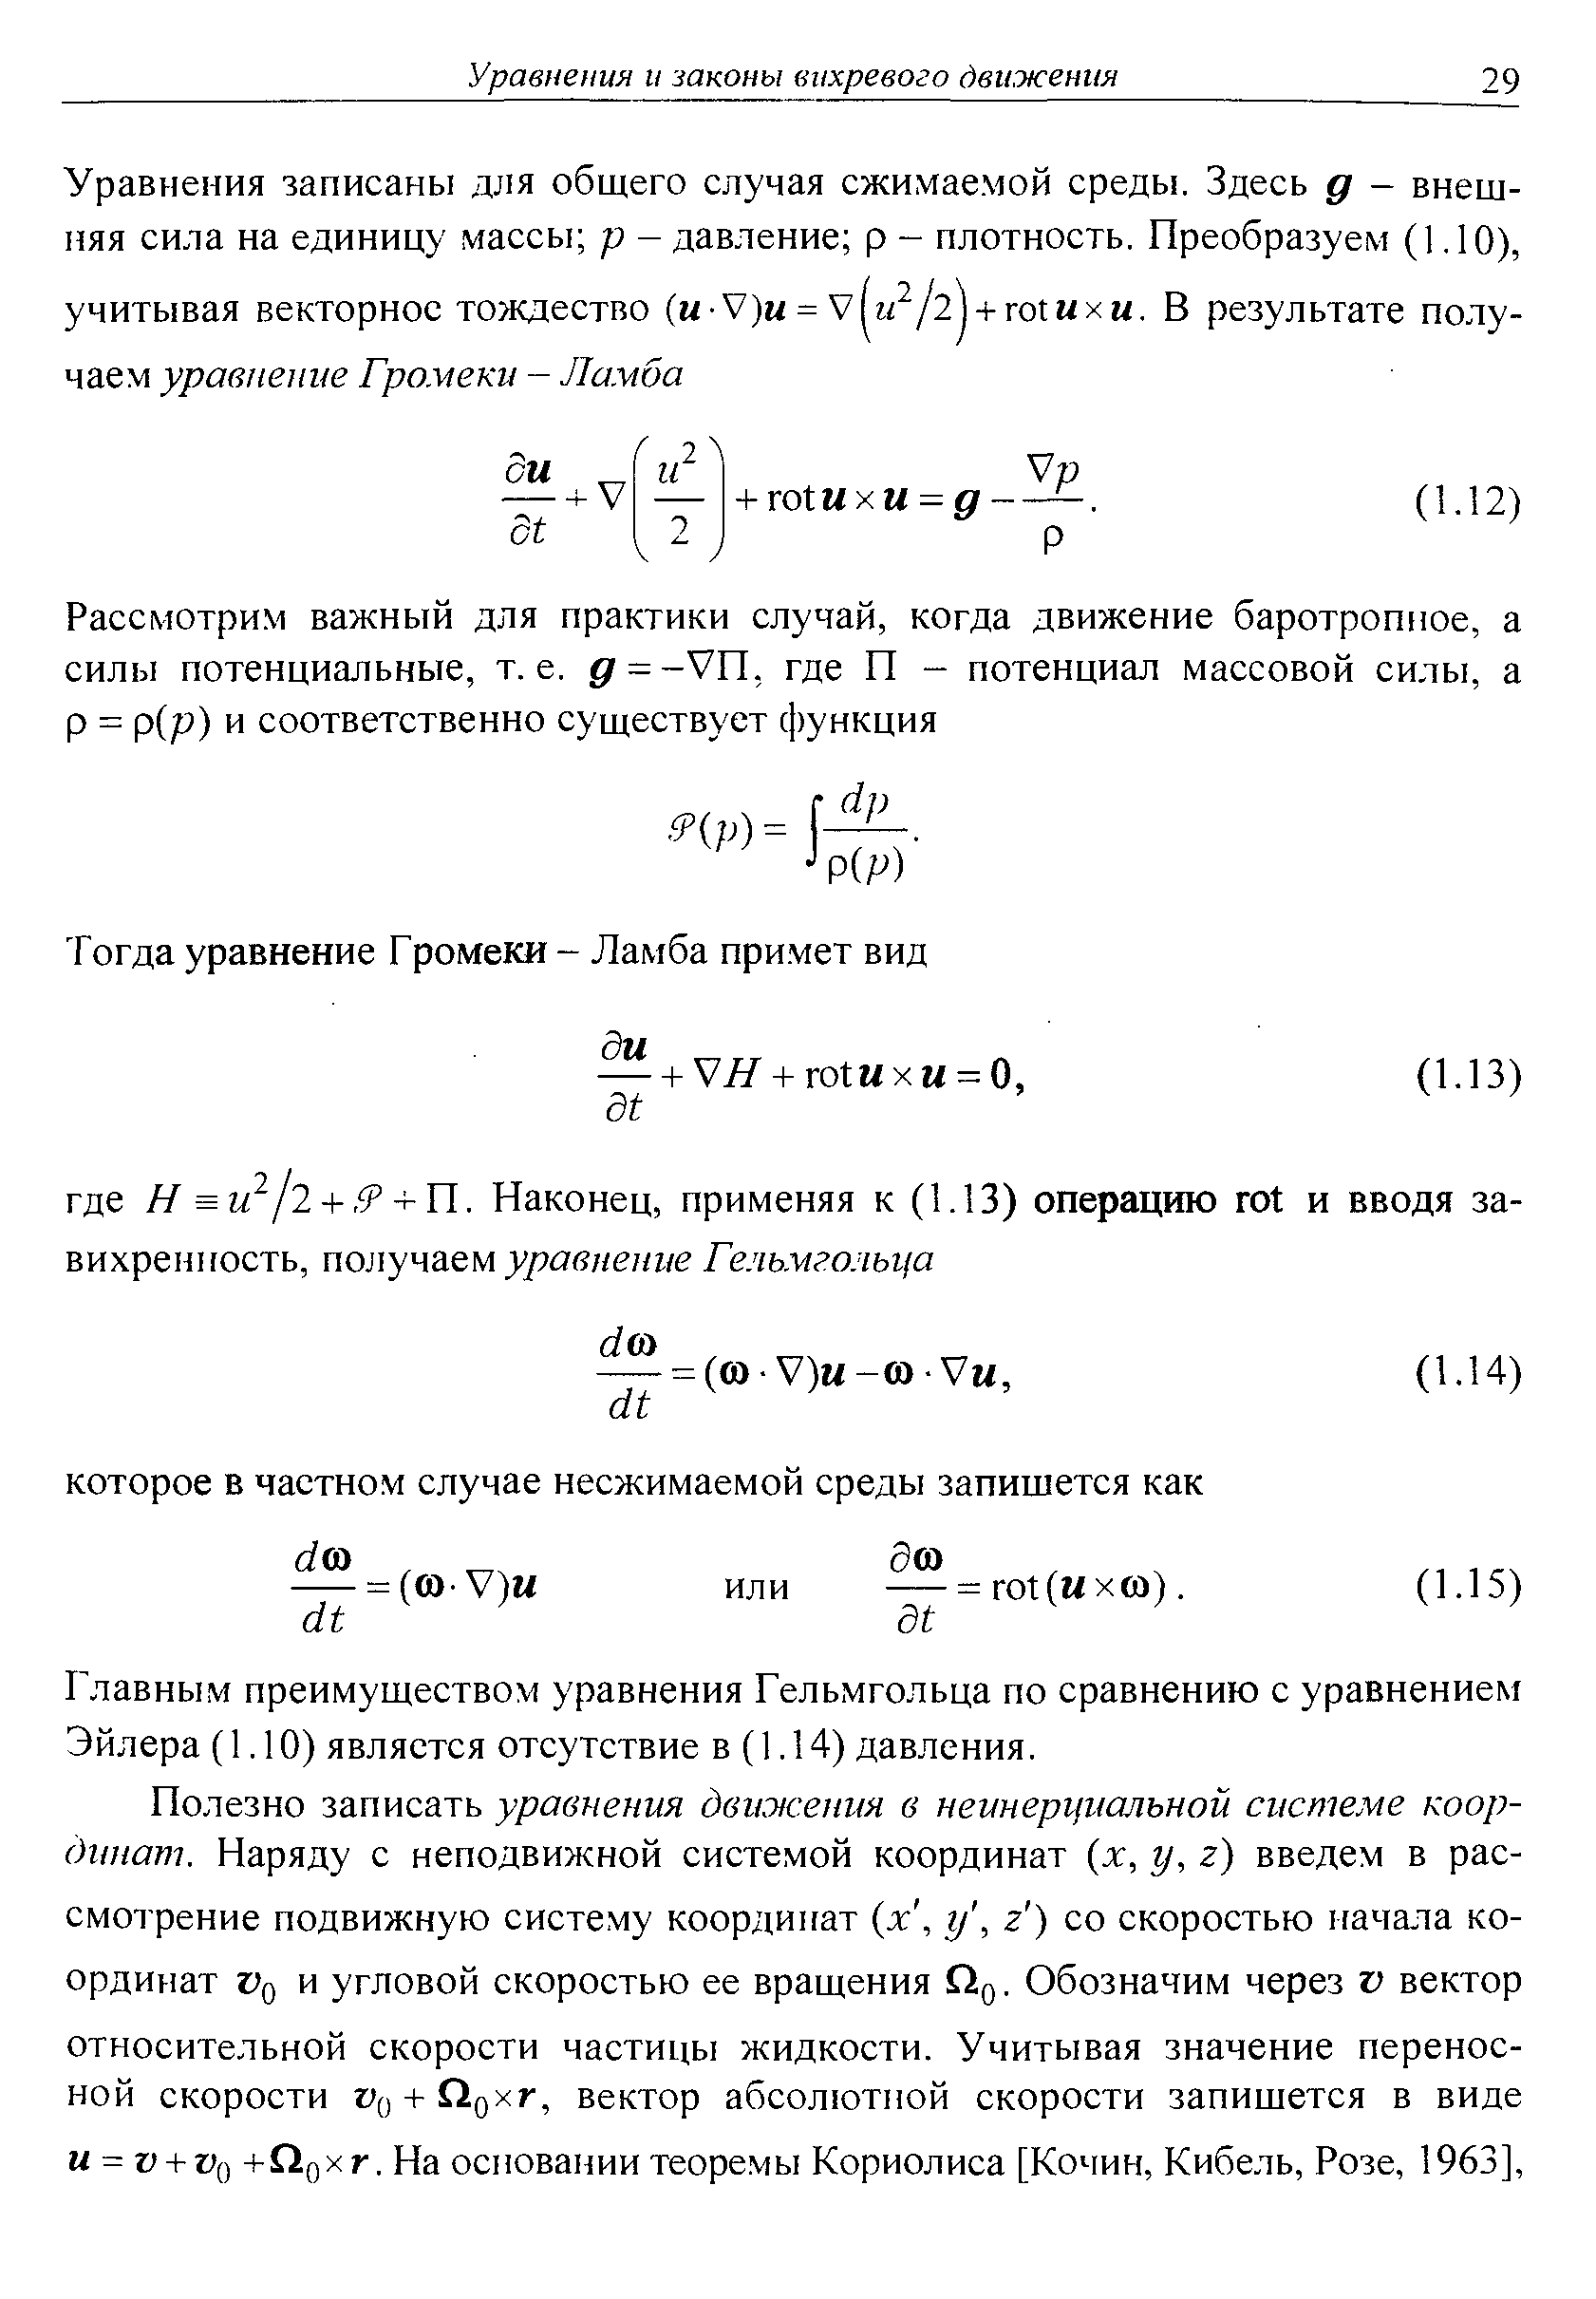 Главным преимуществом уравнения Гельмгольца по сравнению с уравнением Эйлера (1.10) является отсутствие в (1.14) давления.
